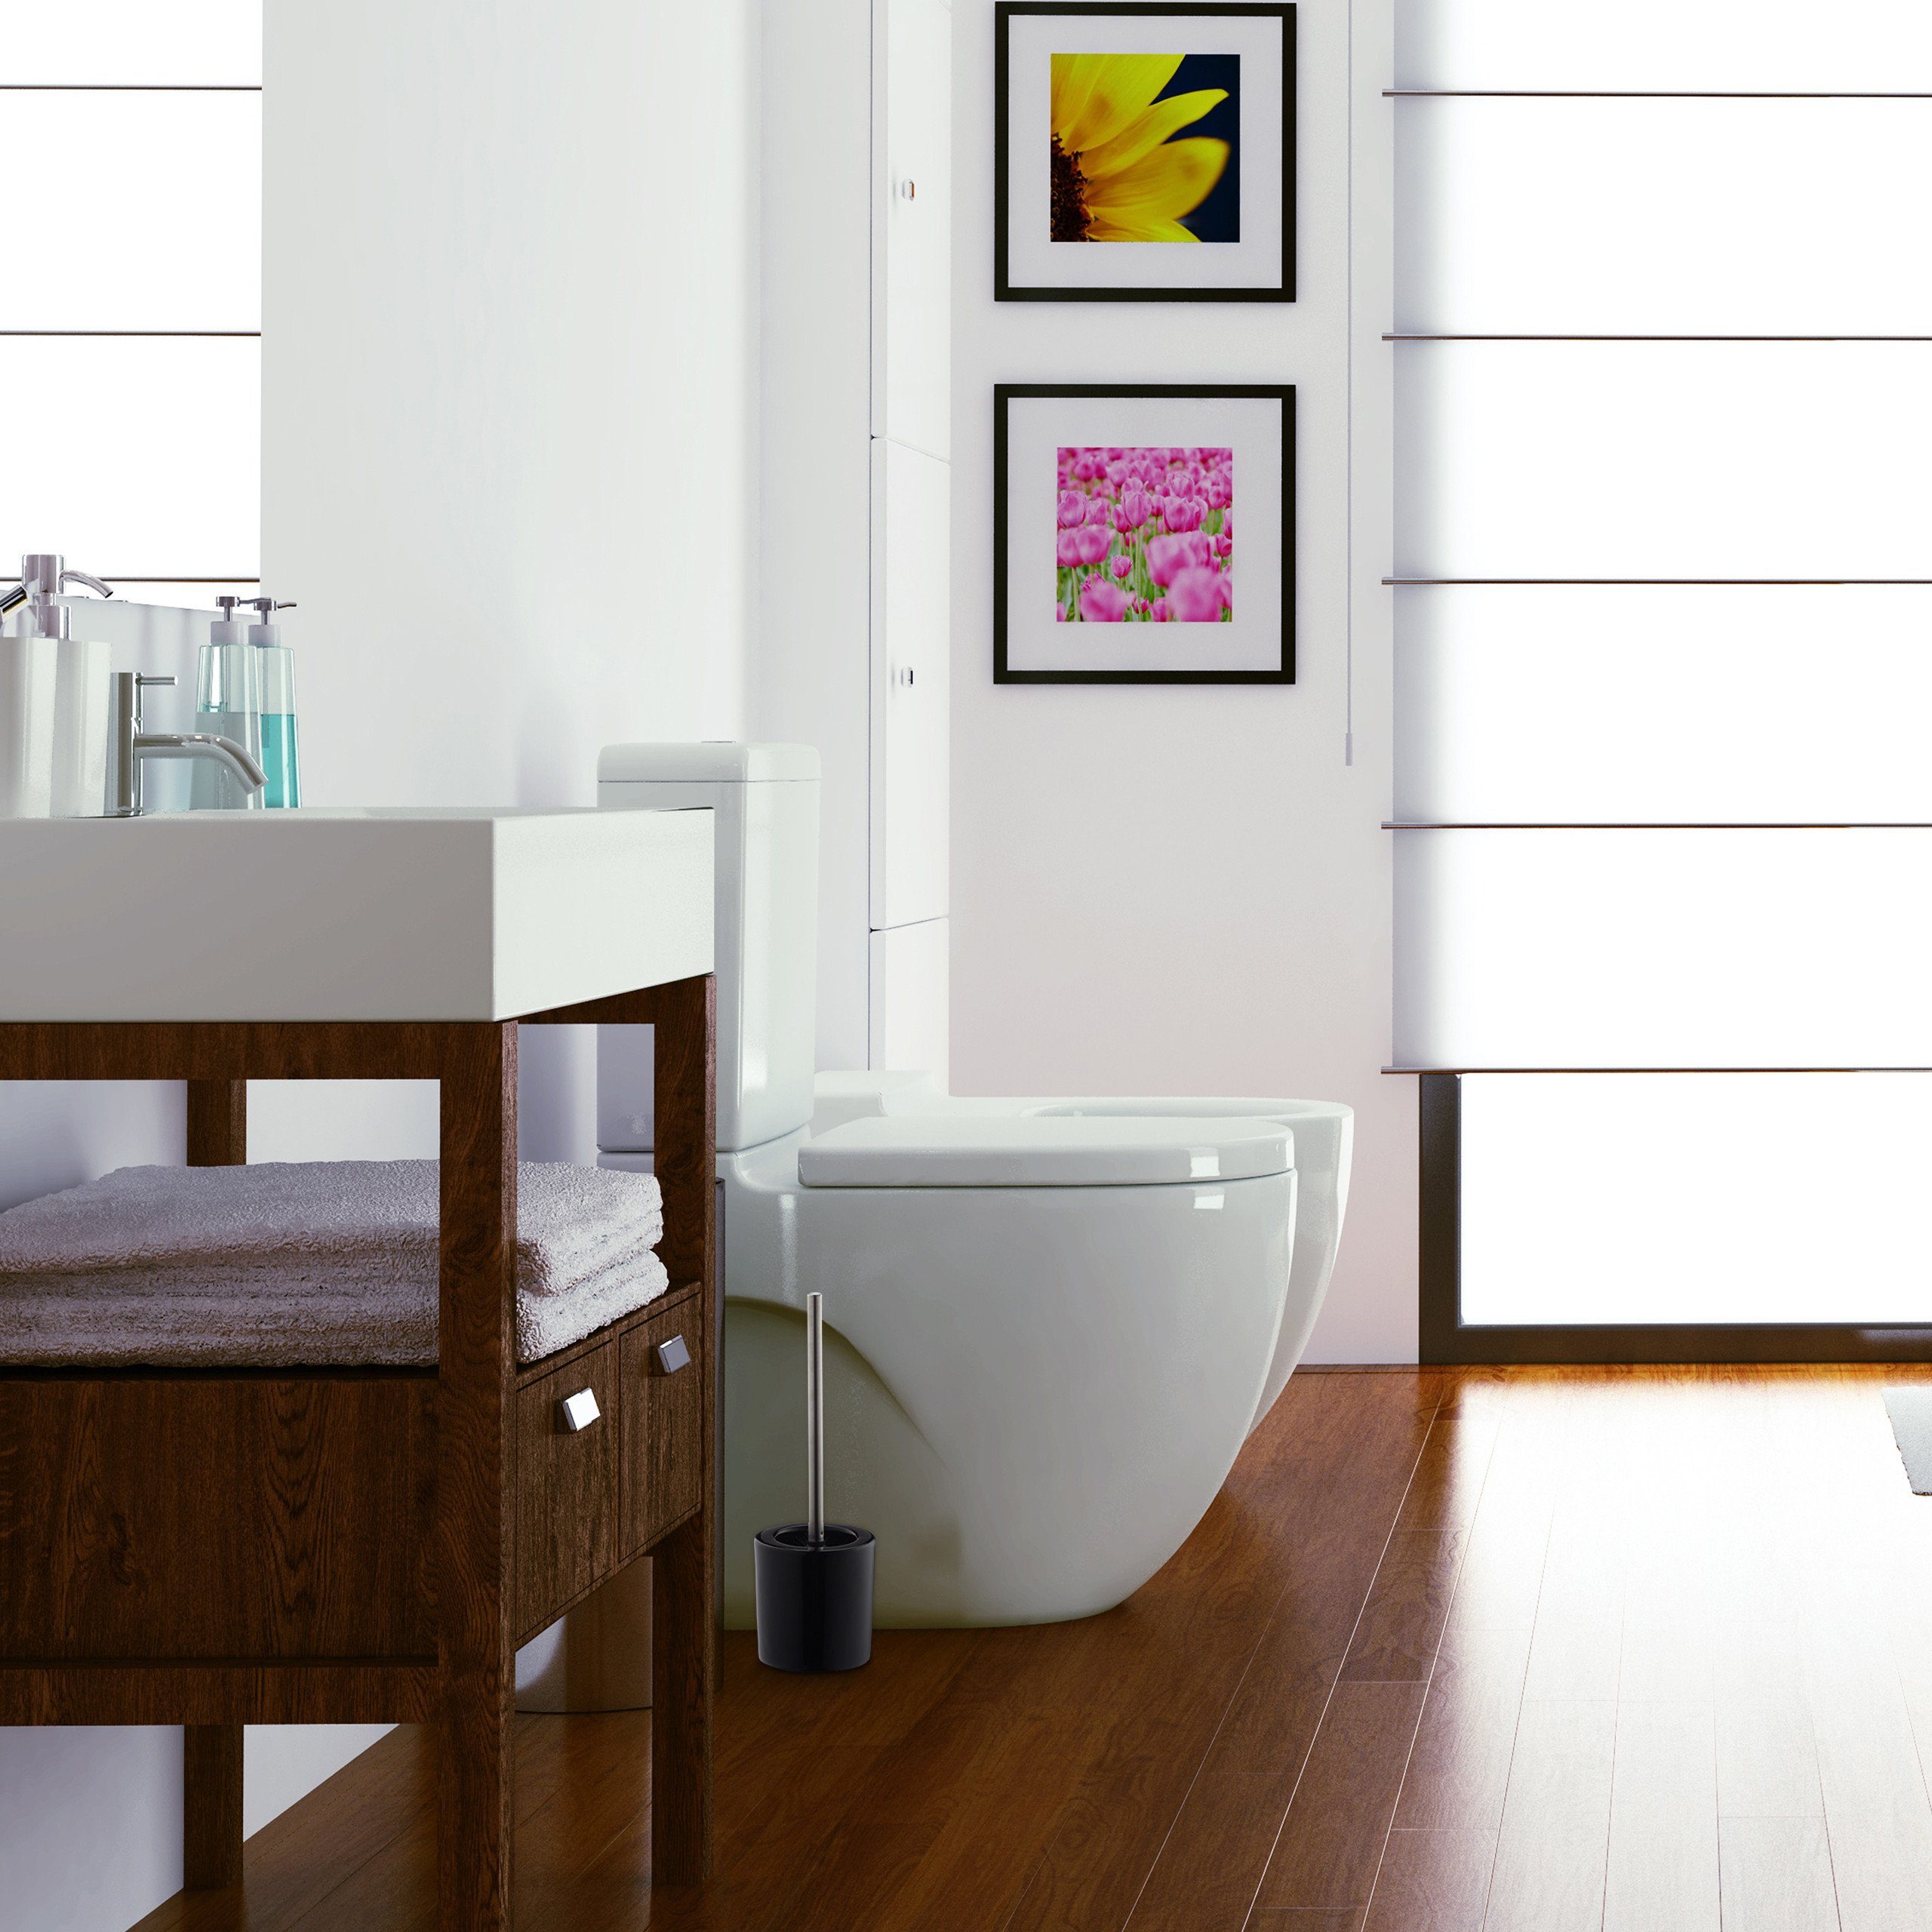 WC-Garnitur WC 1 Garnitur x weiß relaxdays Keramik